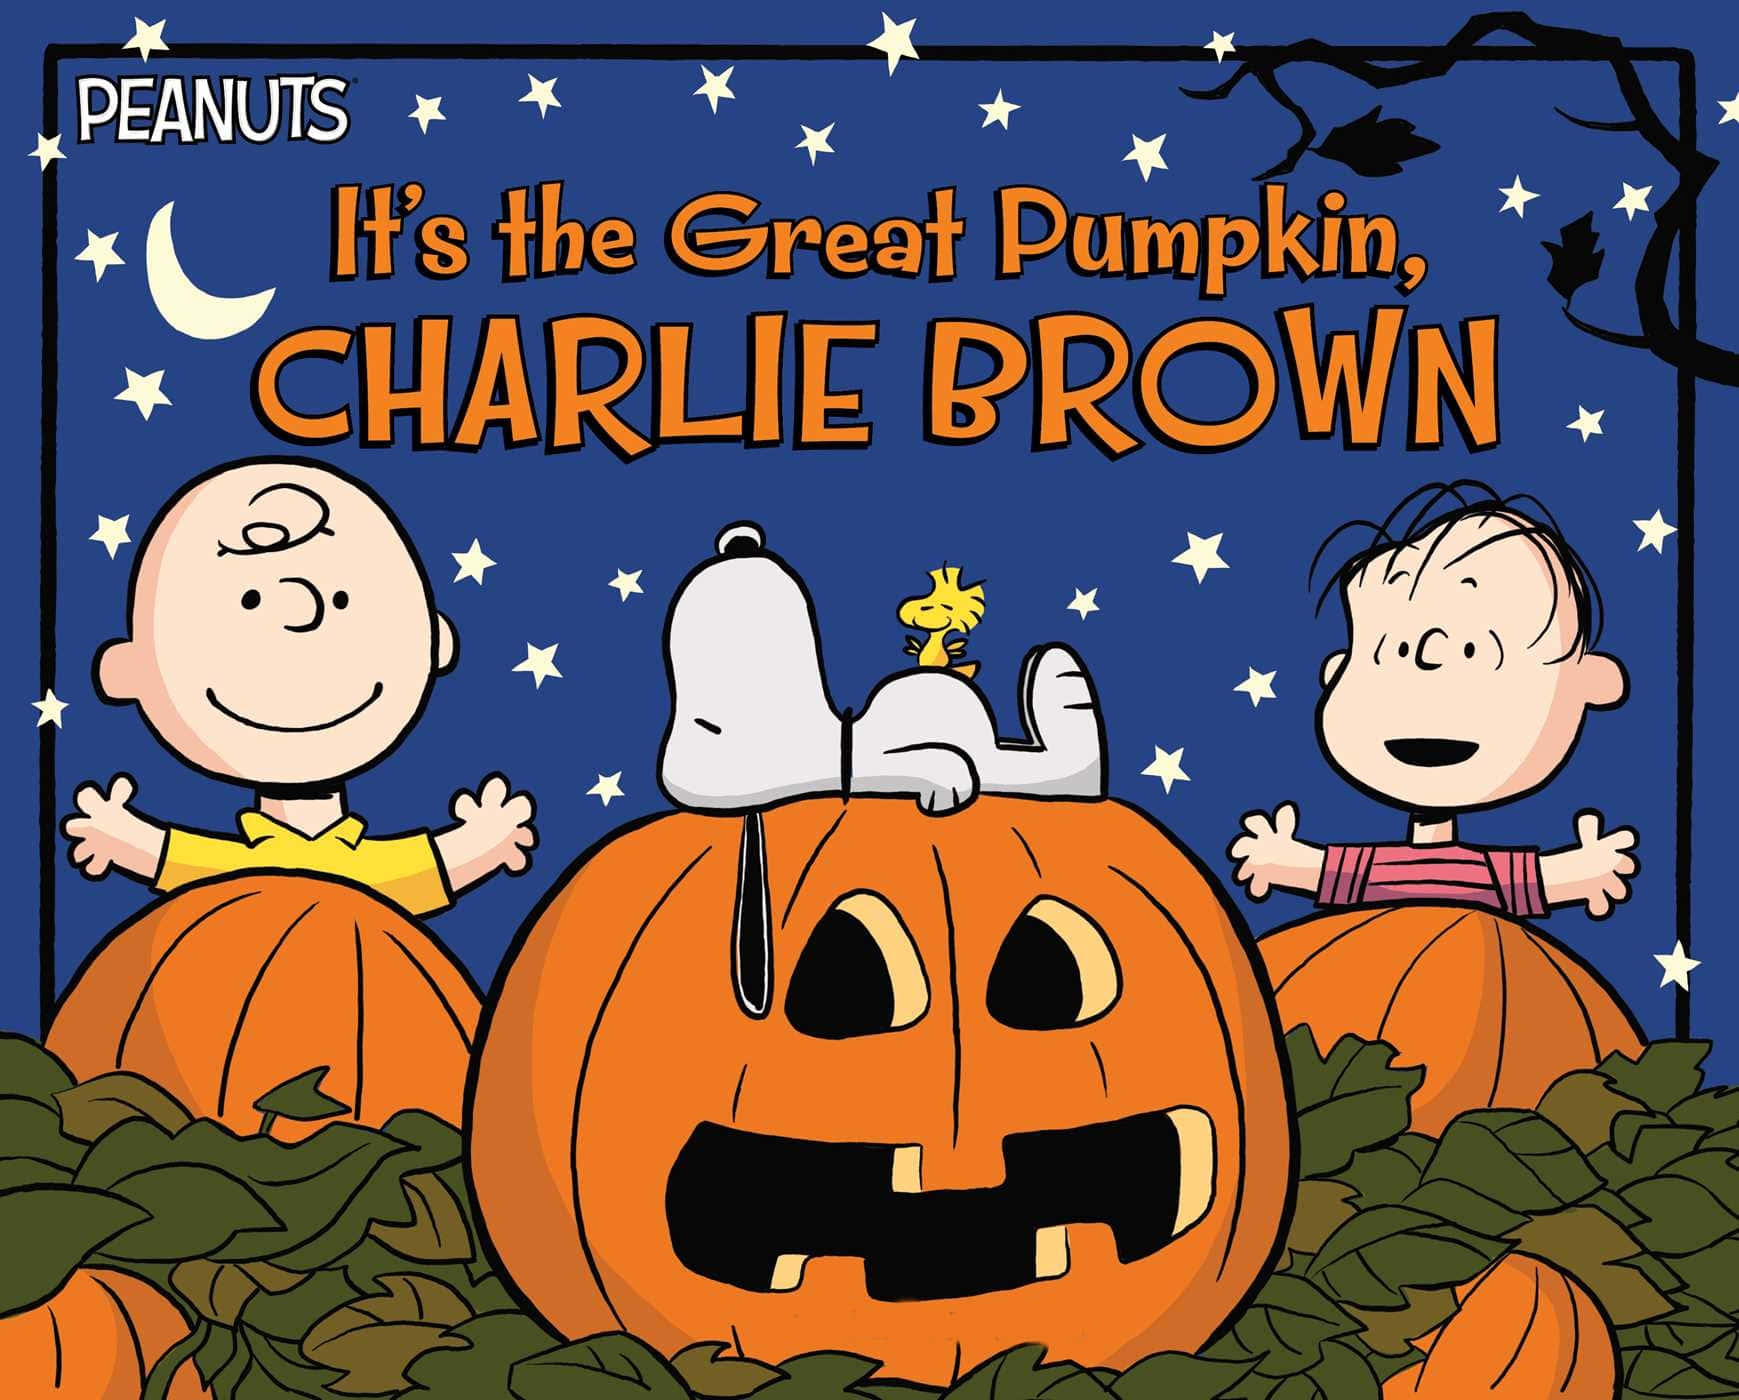 The Great Pumpkin in a Spooky Halloween Night Wallpaper